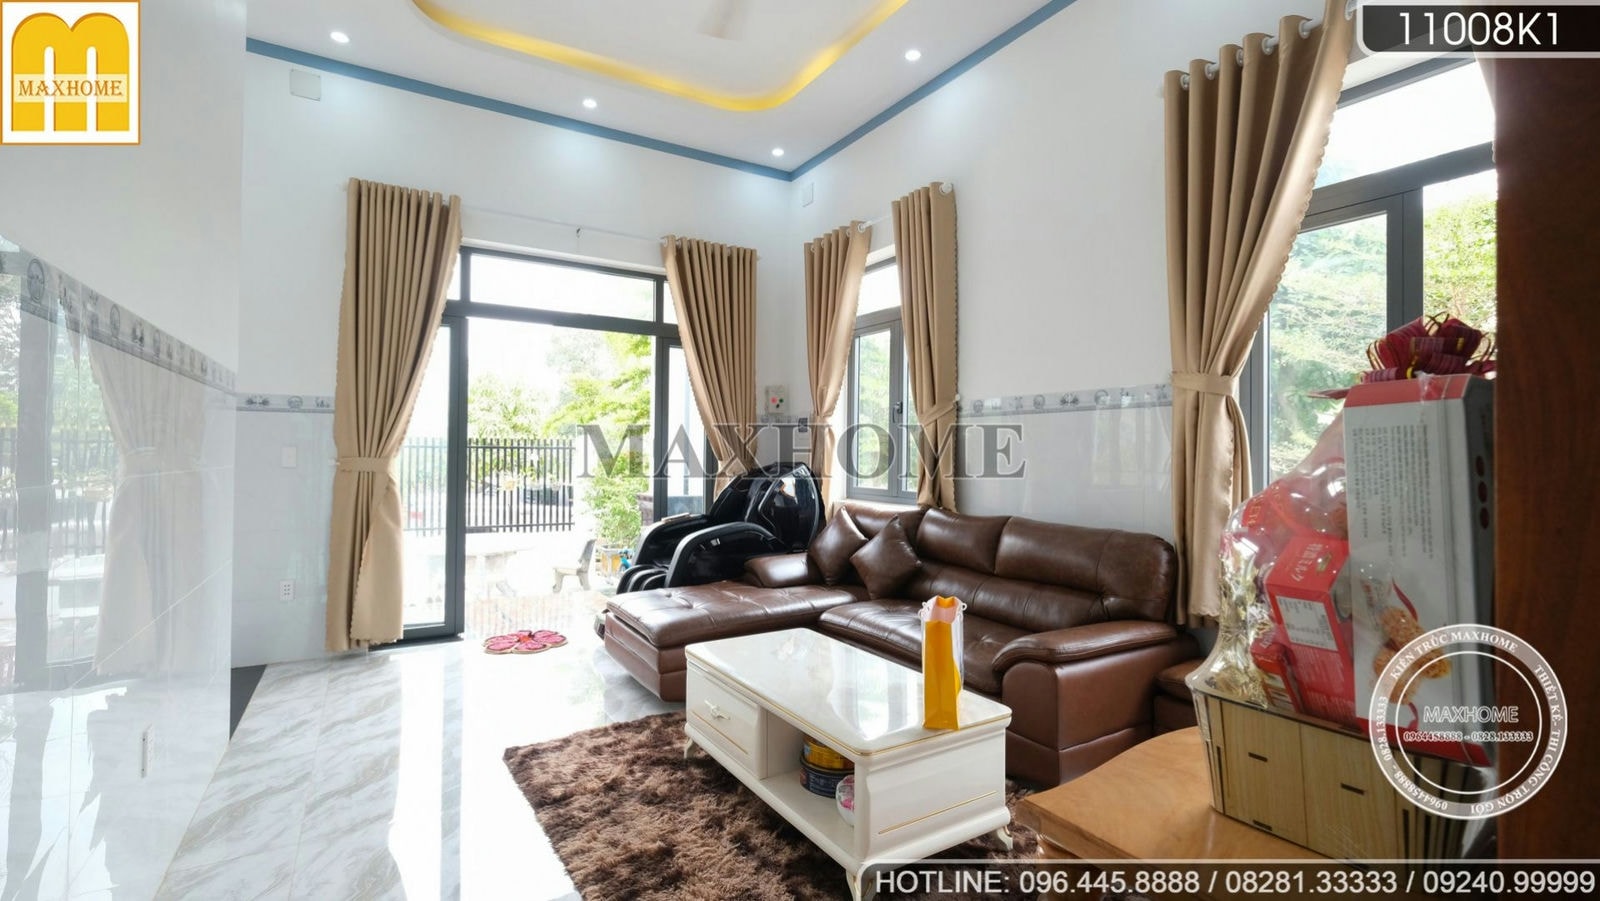 Quá đẹp với căn nhà vườn cấp 4 được hoàn thiện ở Đồng Nai | MH01434